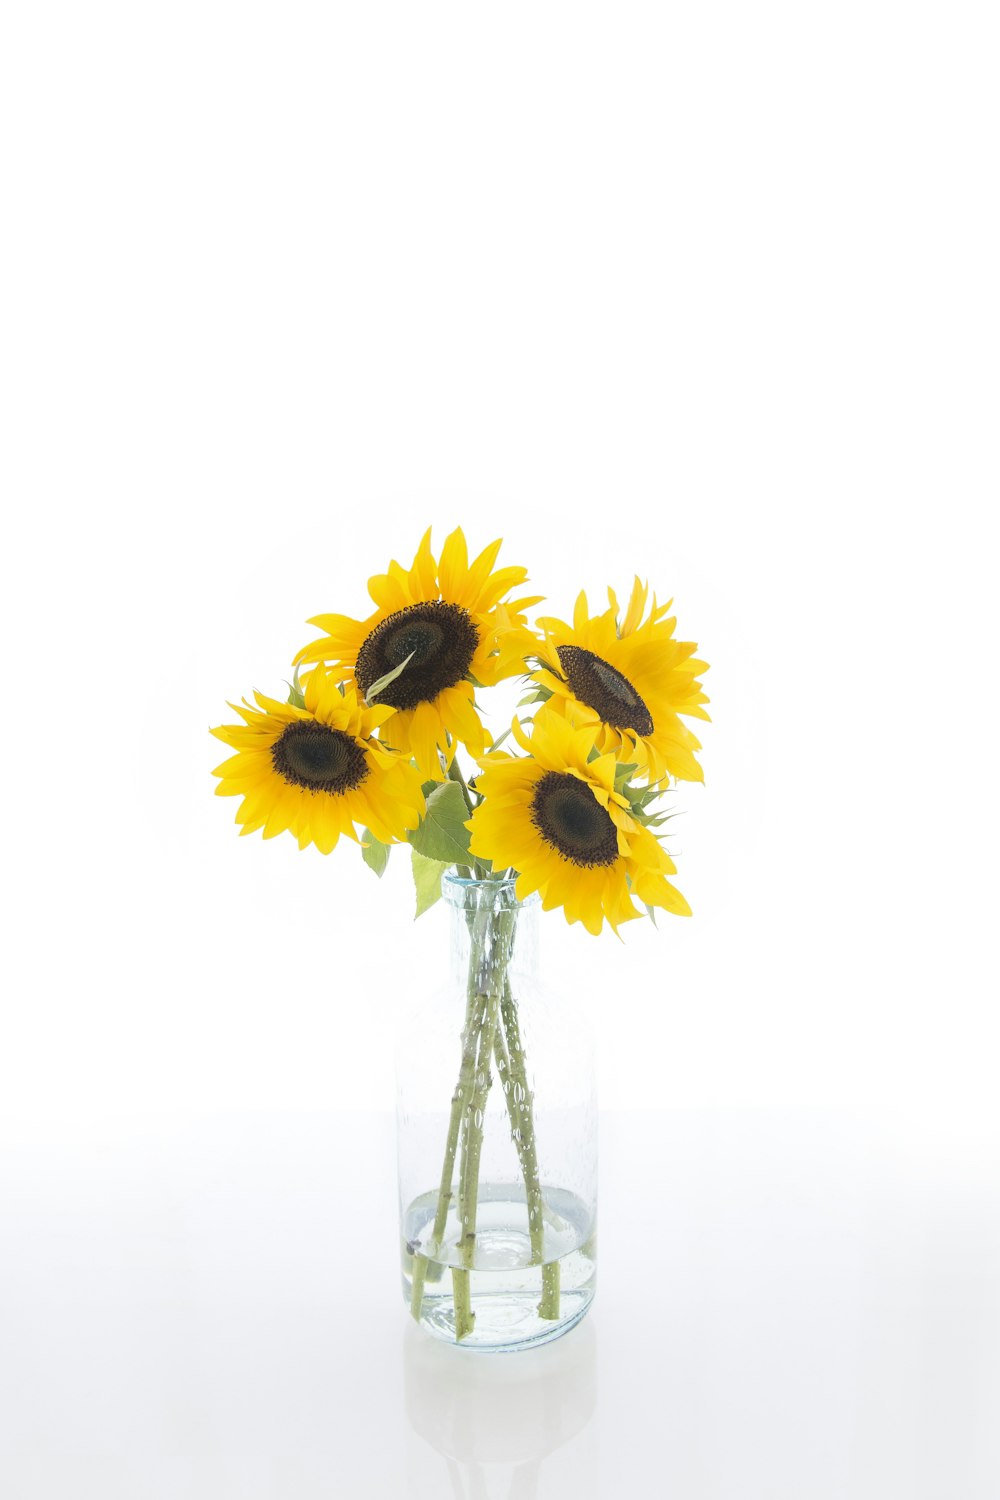 Sunflower Vase Pictures | Download Free Images On Unsplash